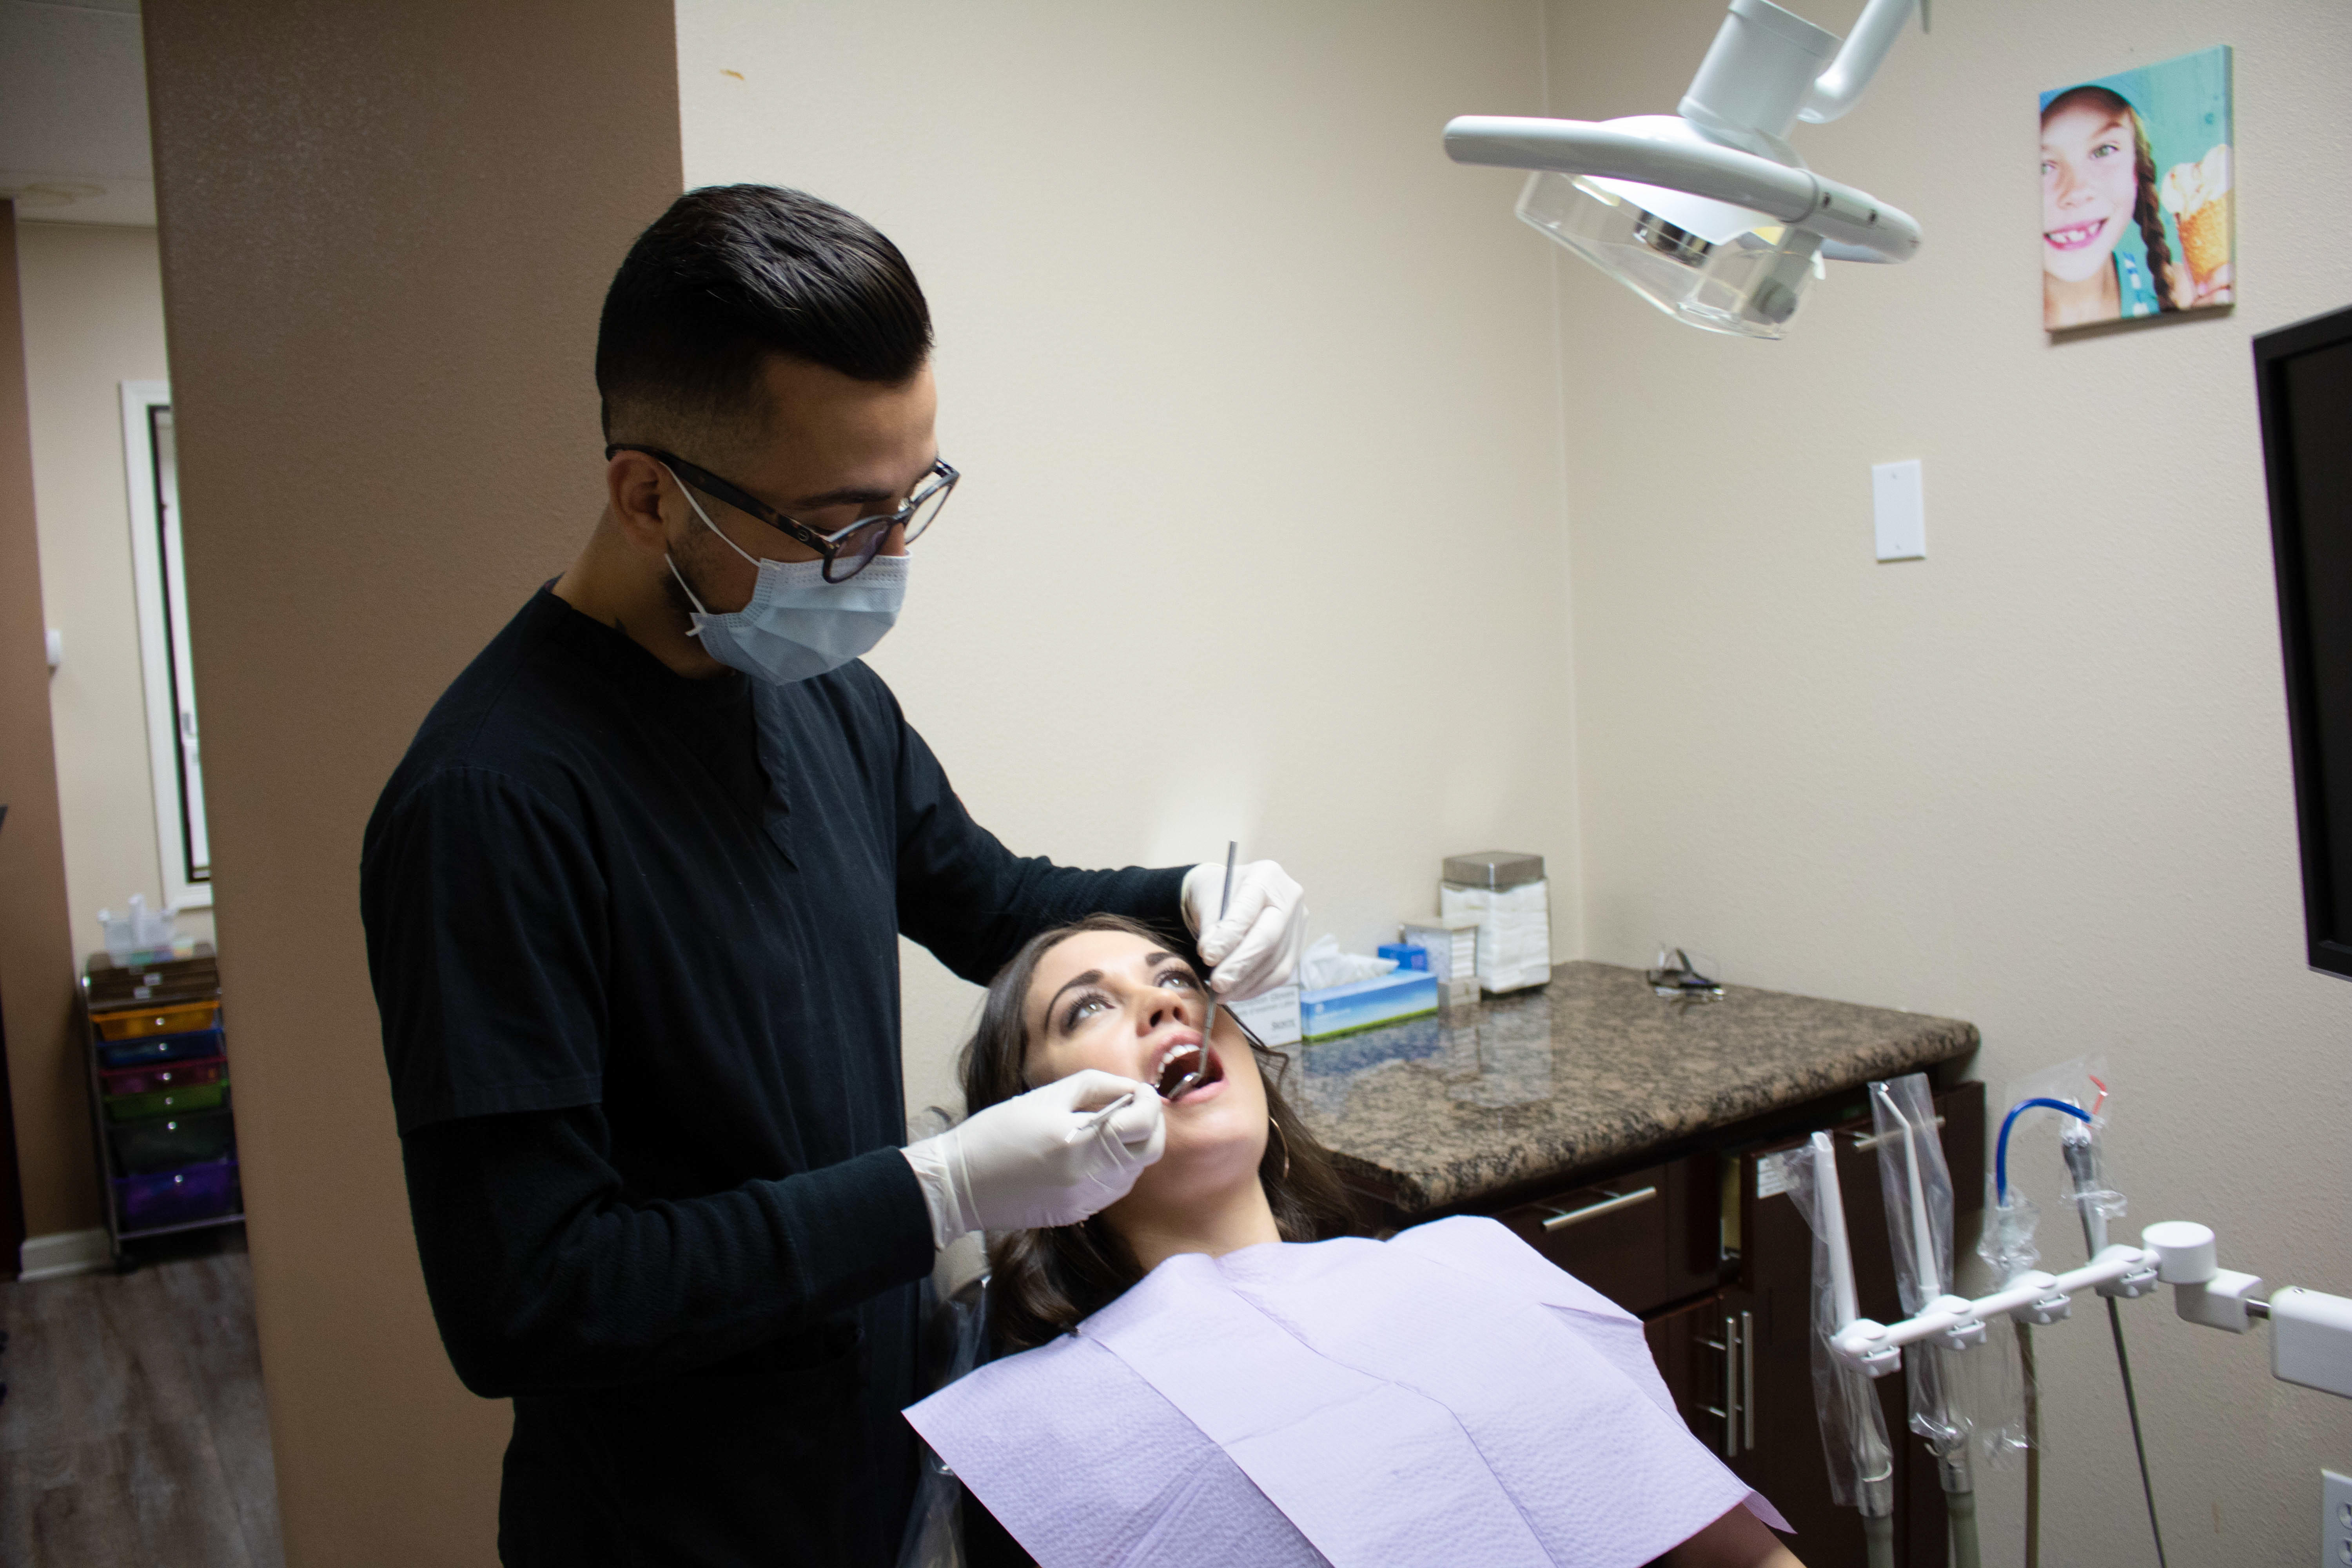 Orthodontics of Downey Photo